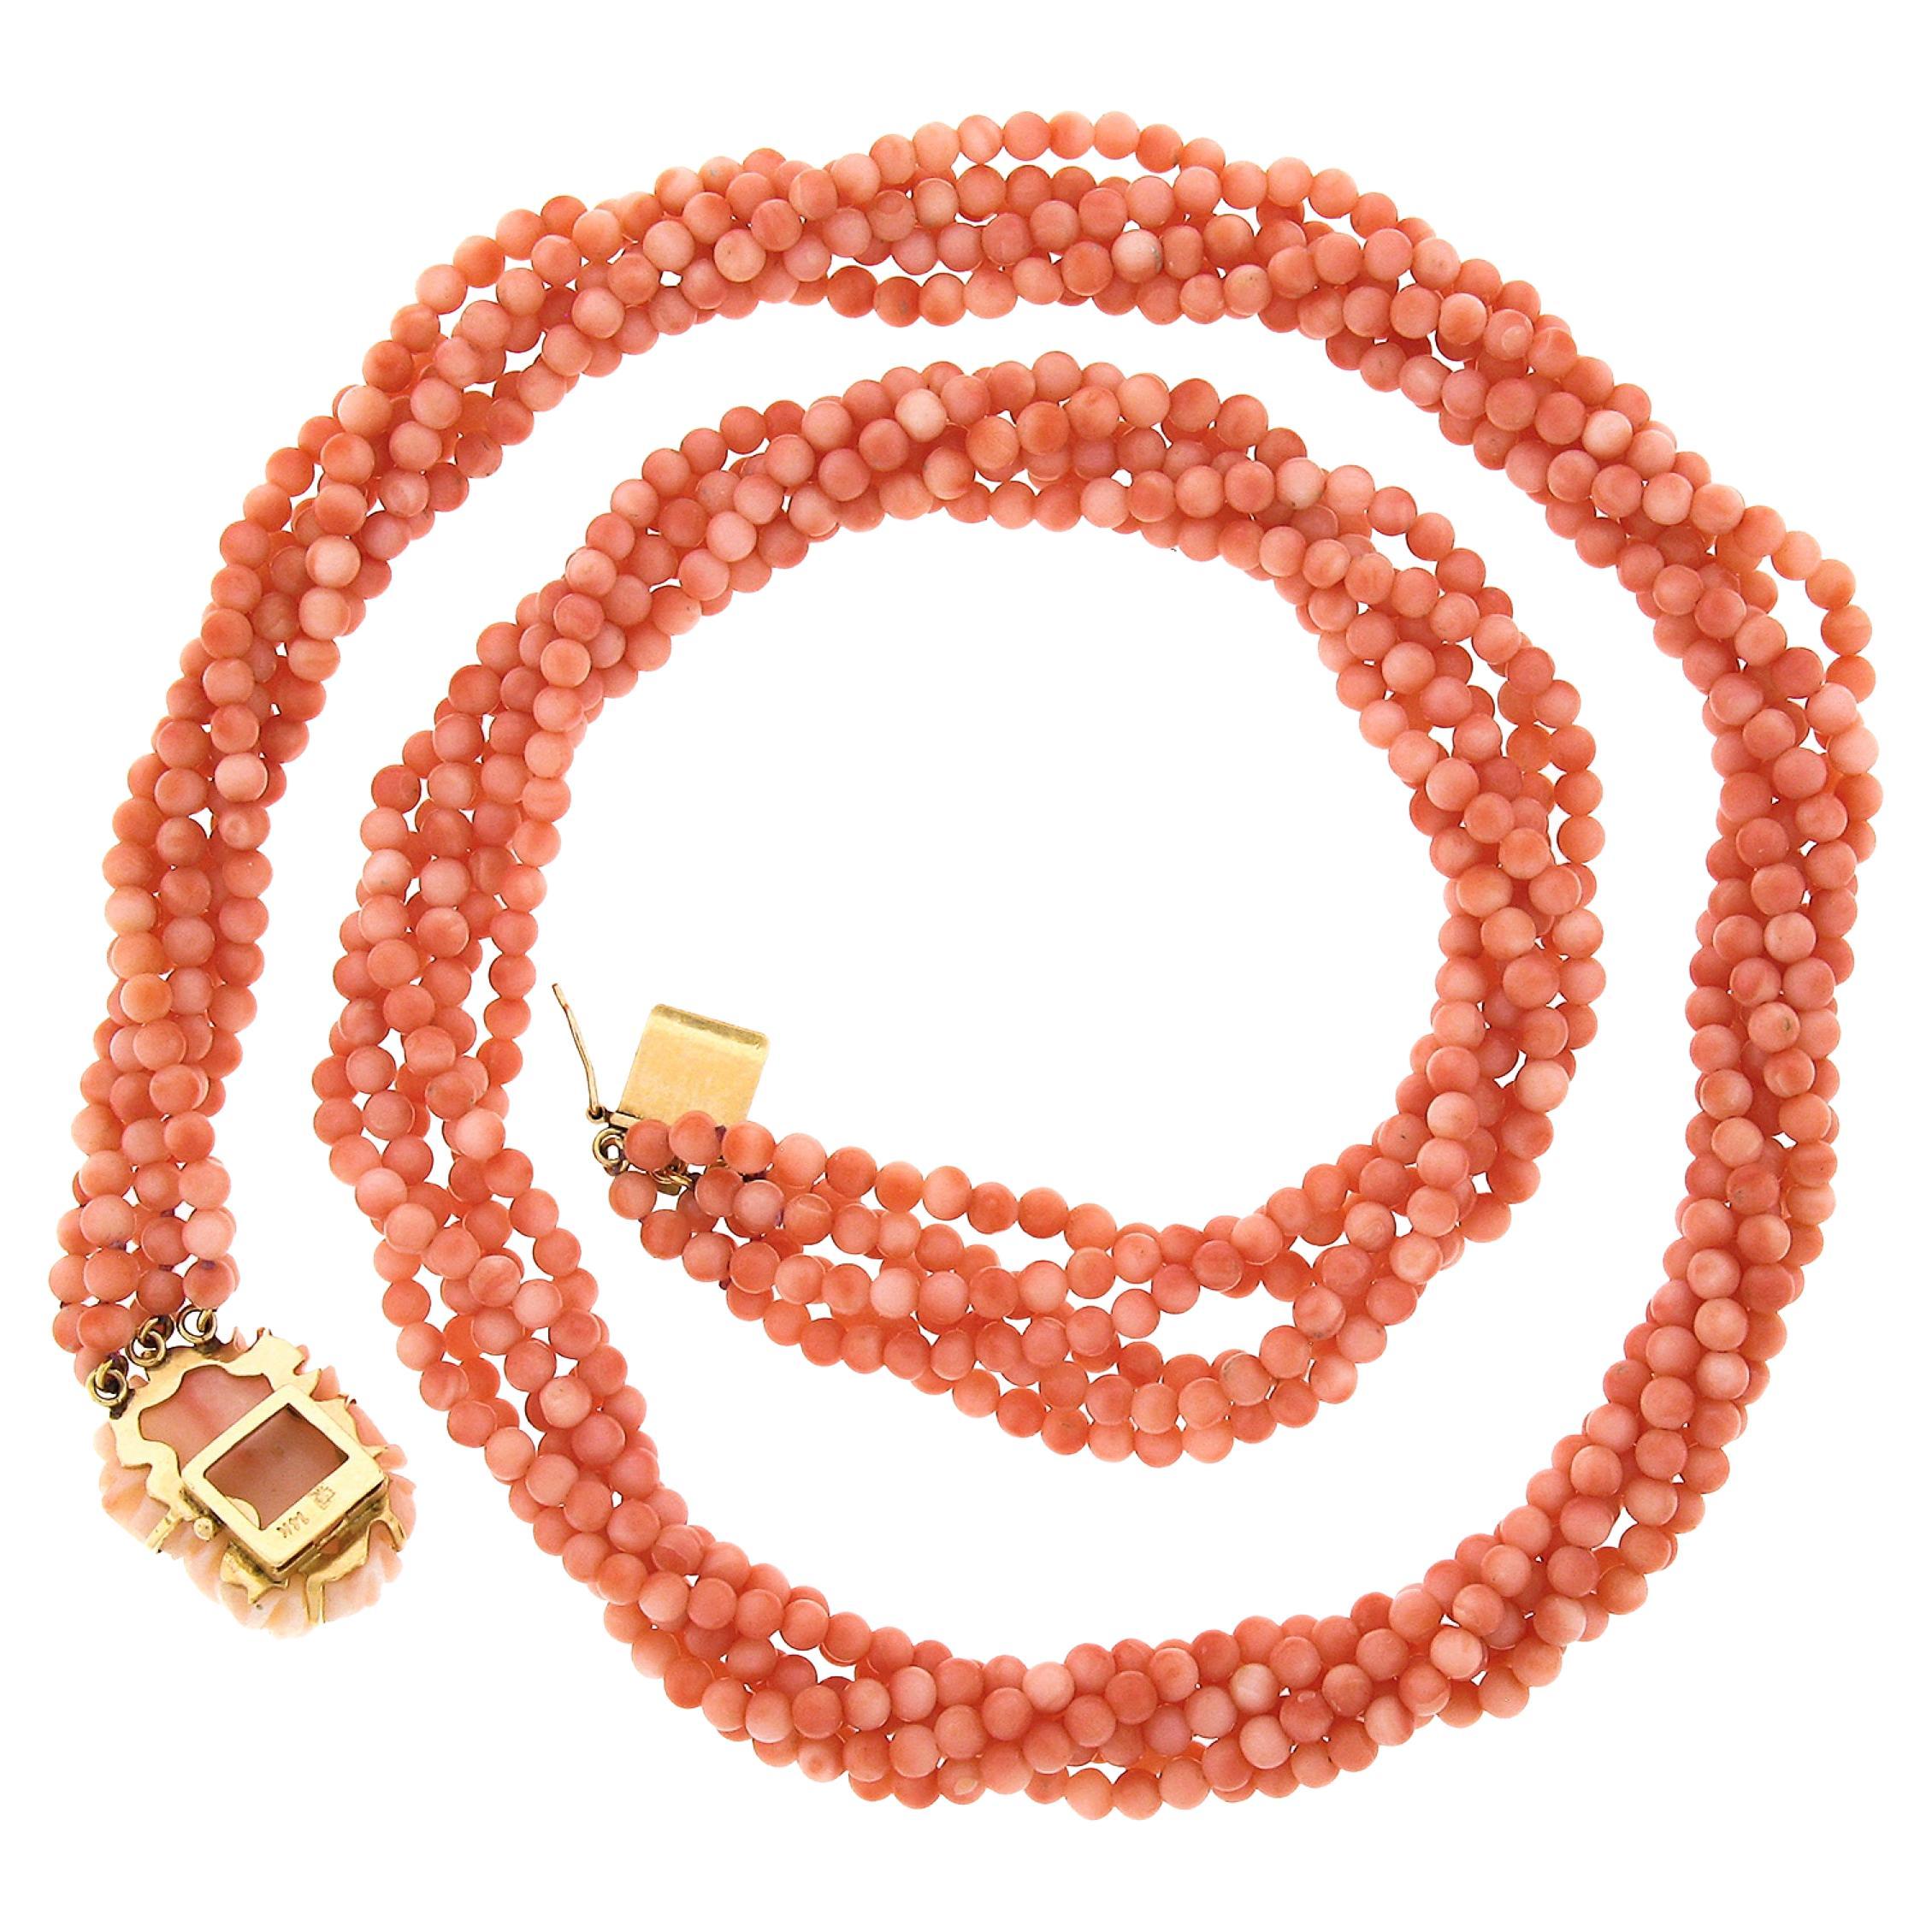 Ce magnifique collier torsade multi-brins en corail est composé de 6 brins reliés par un fermoir en or jaune 14k. Les coraux sont des perles rondes avec des variations de couleur peau d'ange rose. Le haut du fermoir comporte également une magnifique